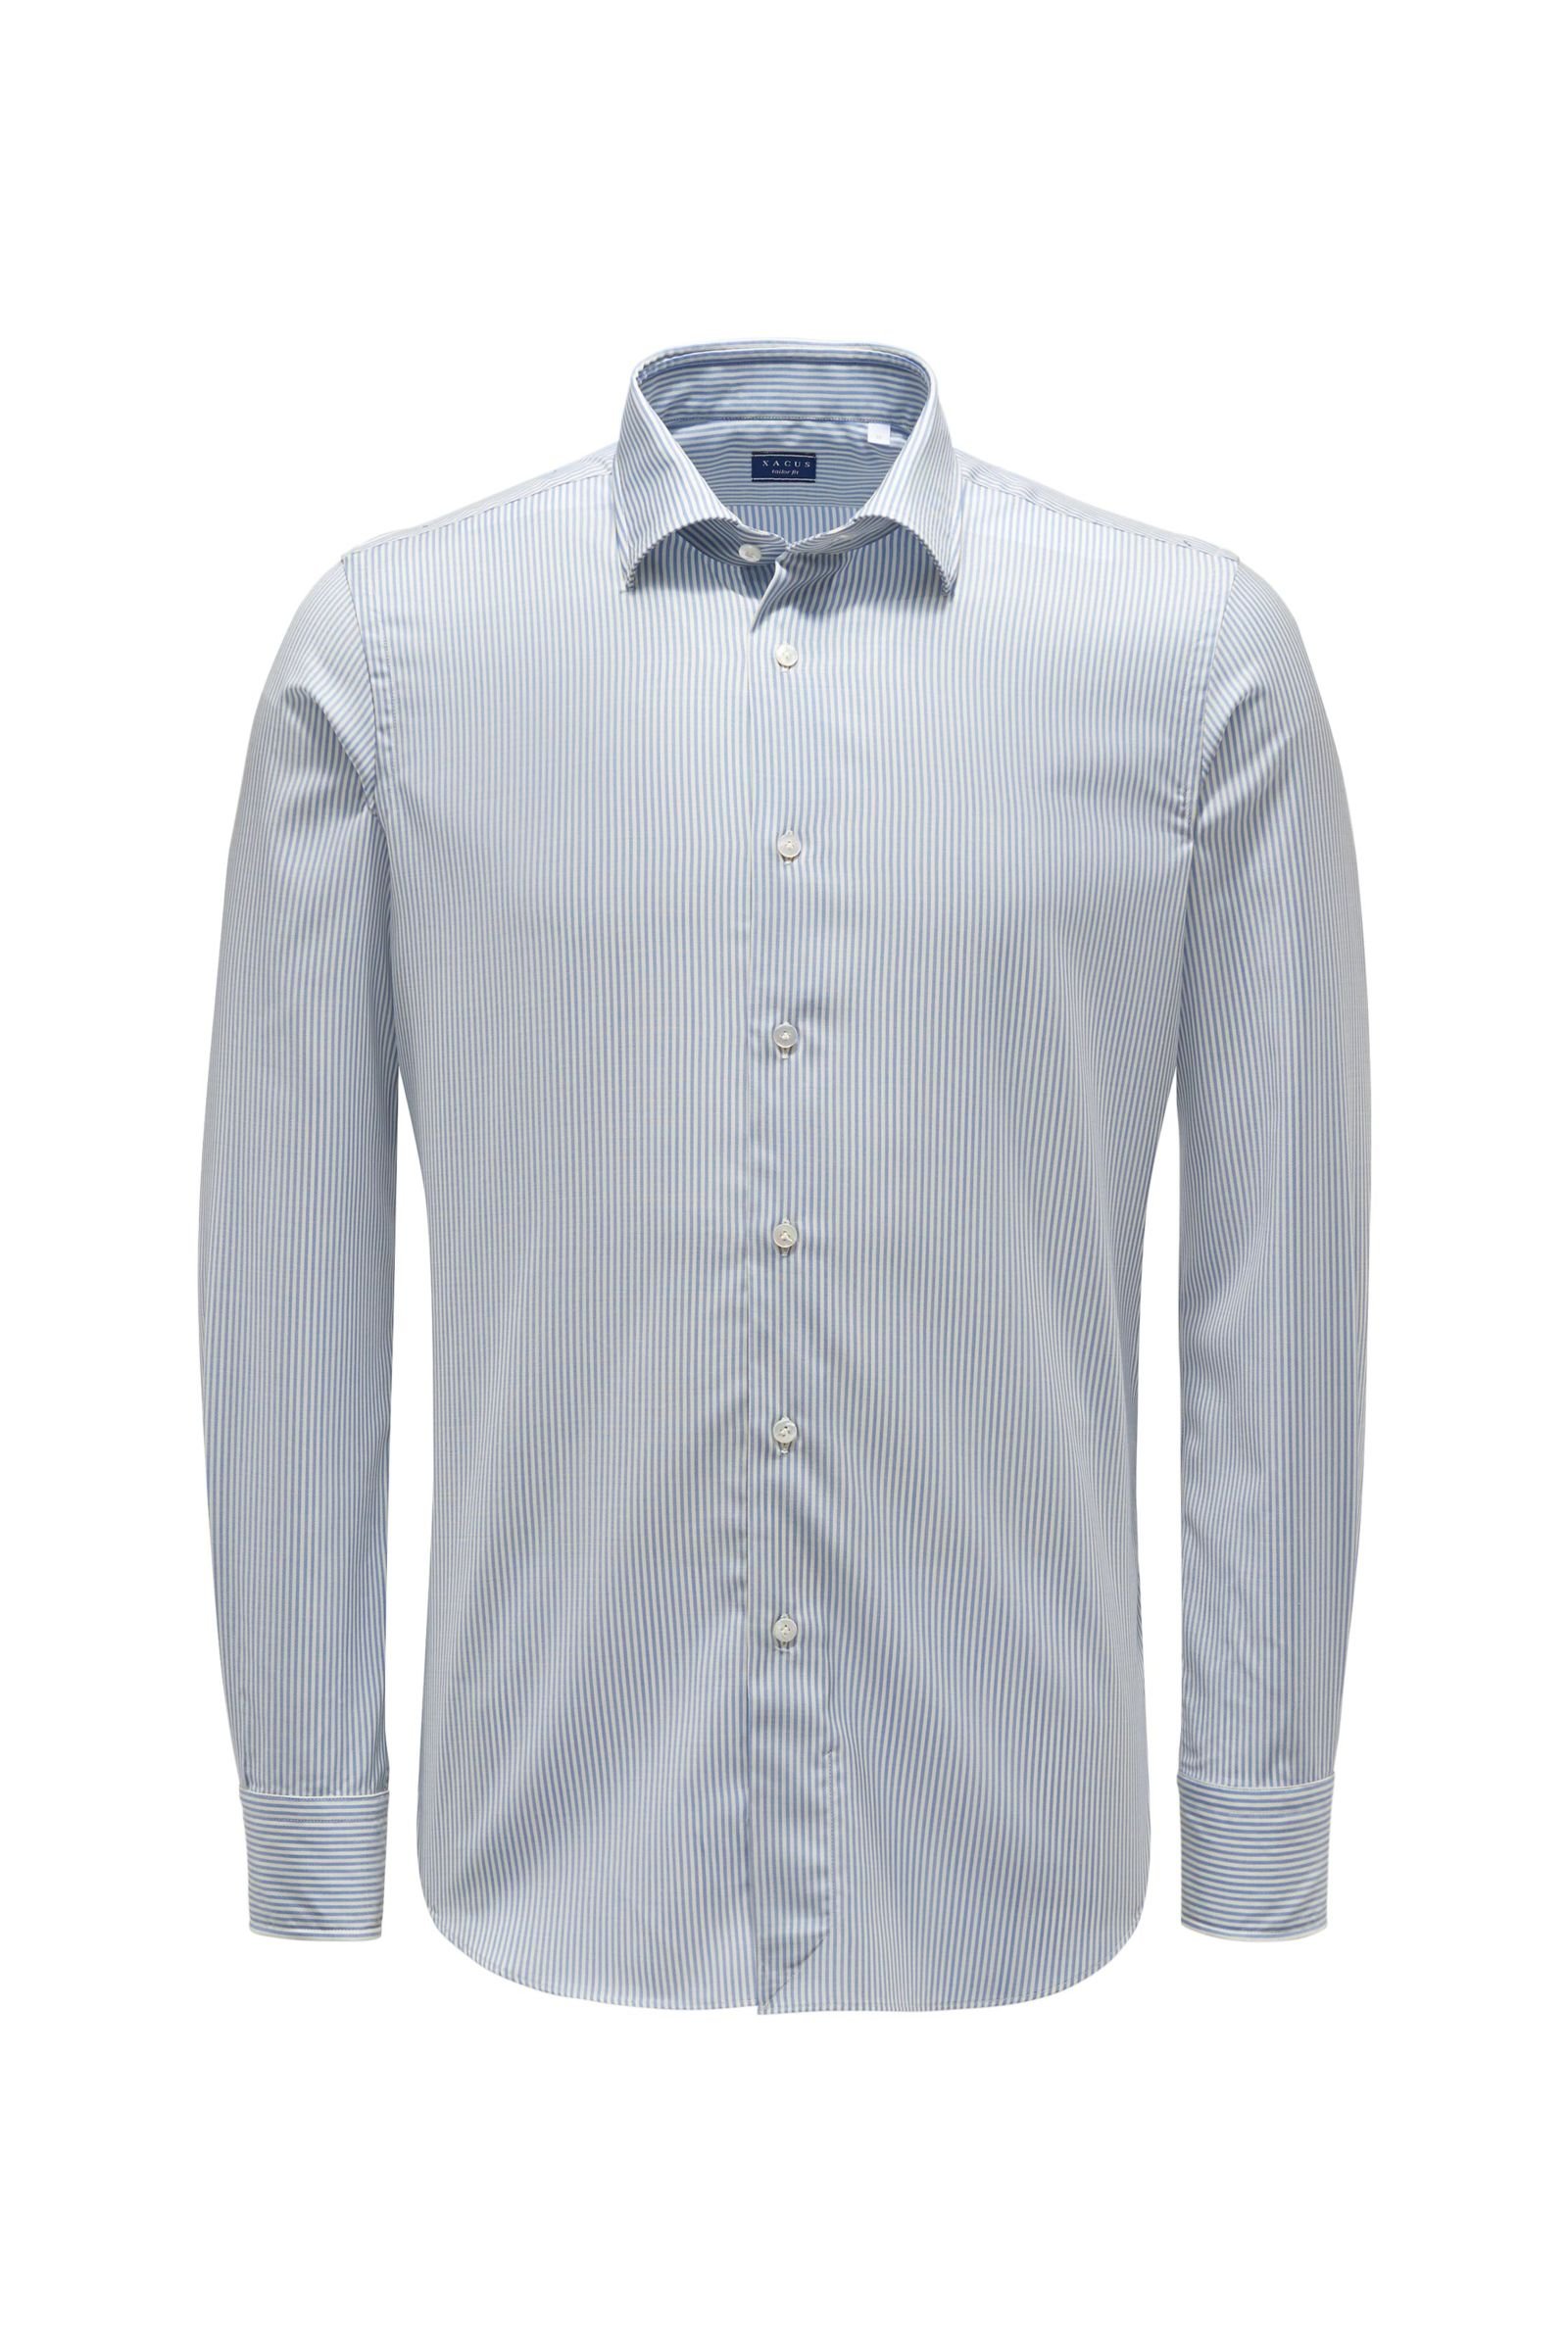 Merino Oxfordhemd 'Tailor Fit' schmaler Kragen hellblau/offwhite gestreift